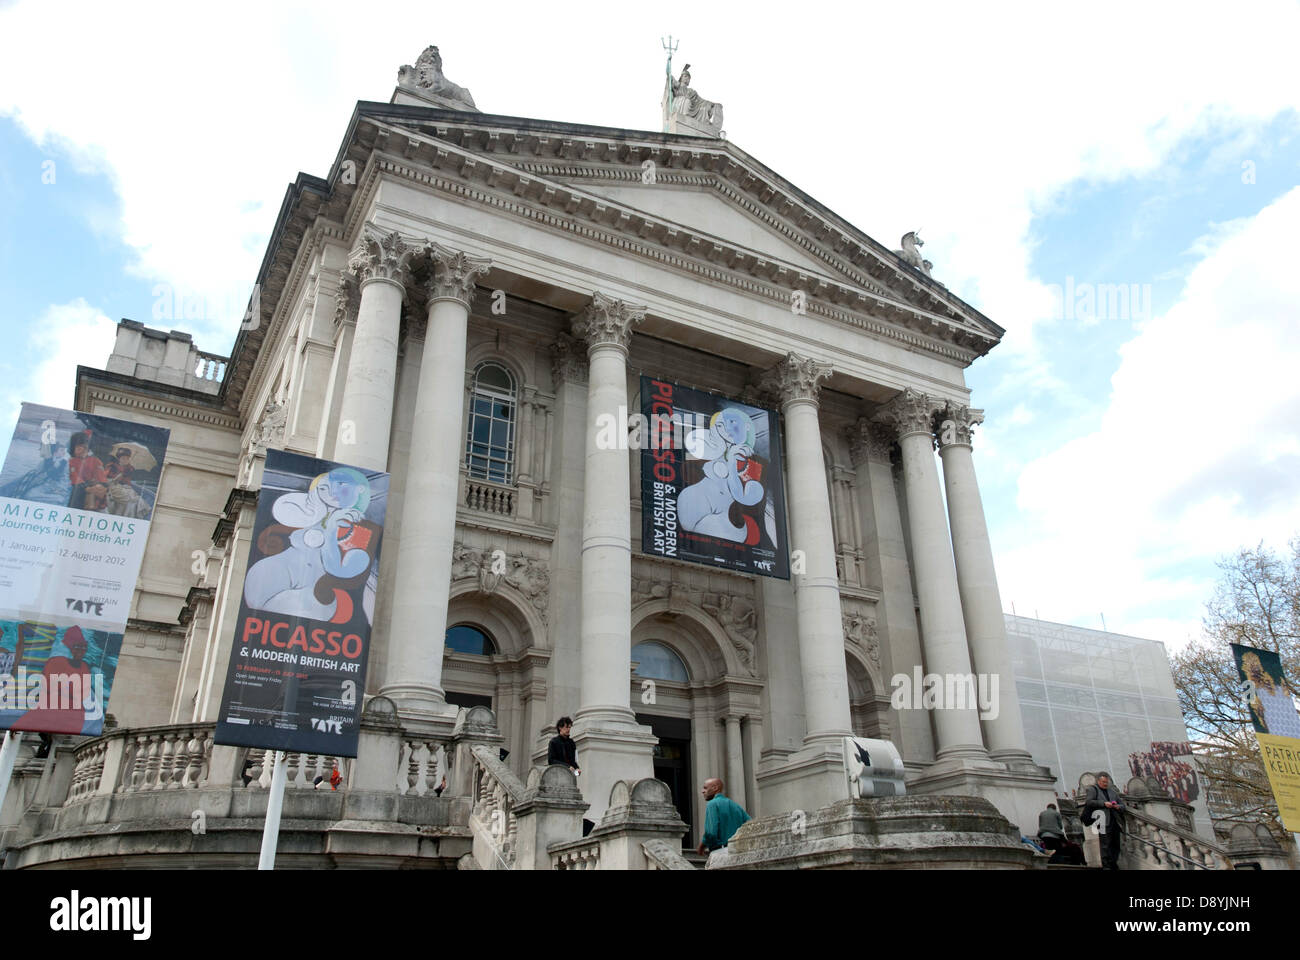 La fachada de la Tate Britain, de Londres. Los banners publicitarios son la exposición "Picasso y el arte británico moderno'. Foto de stock